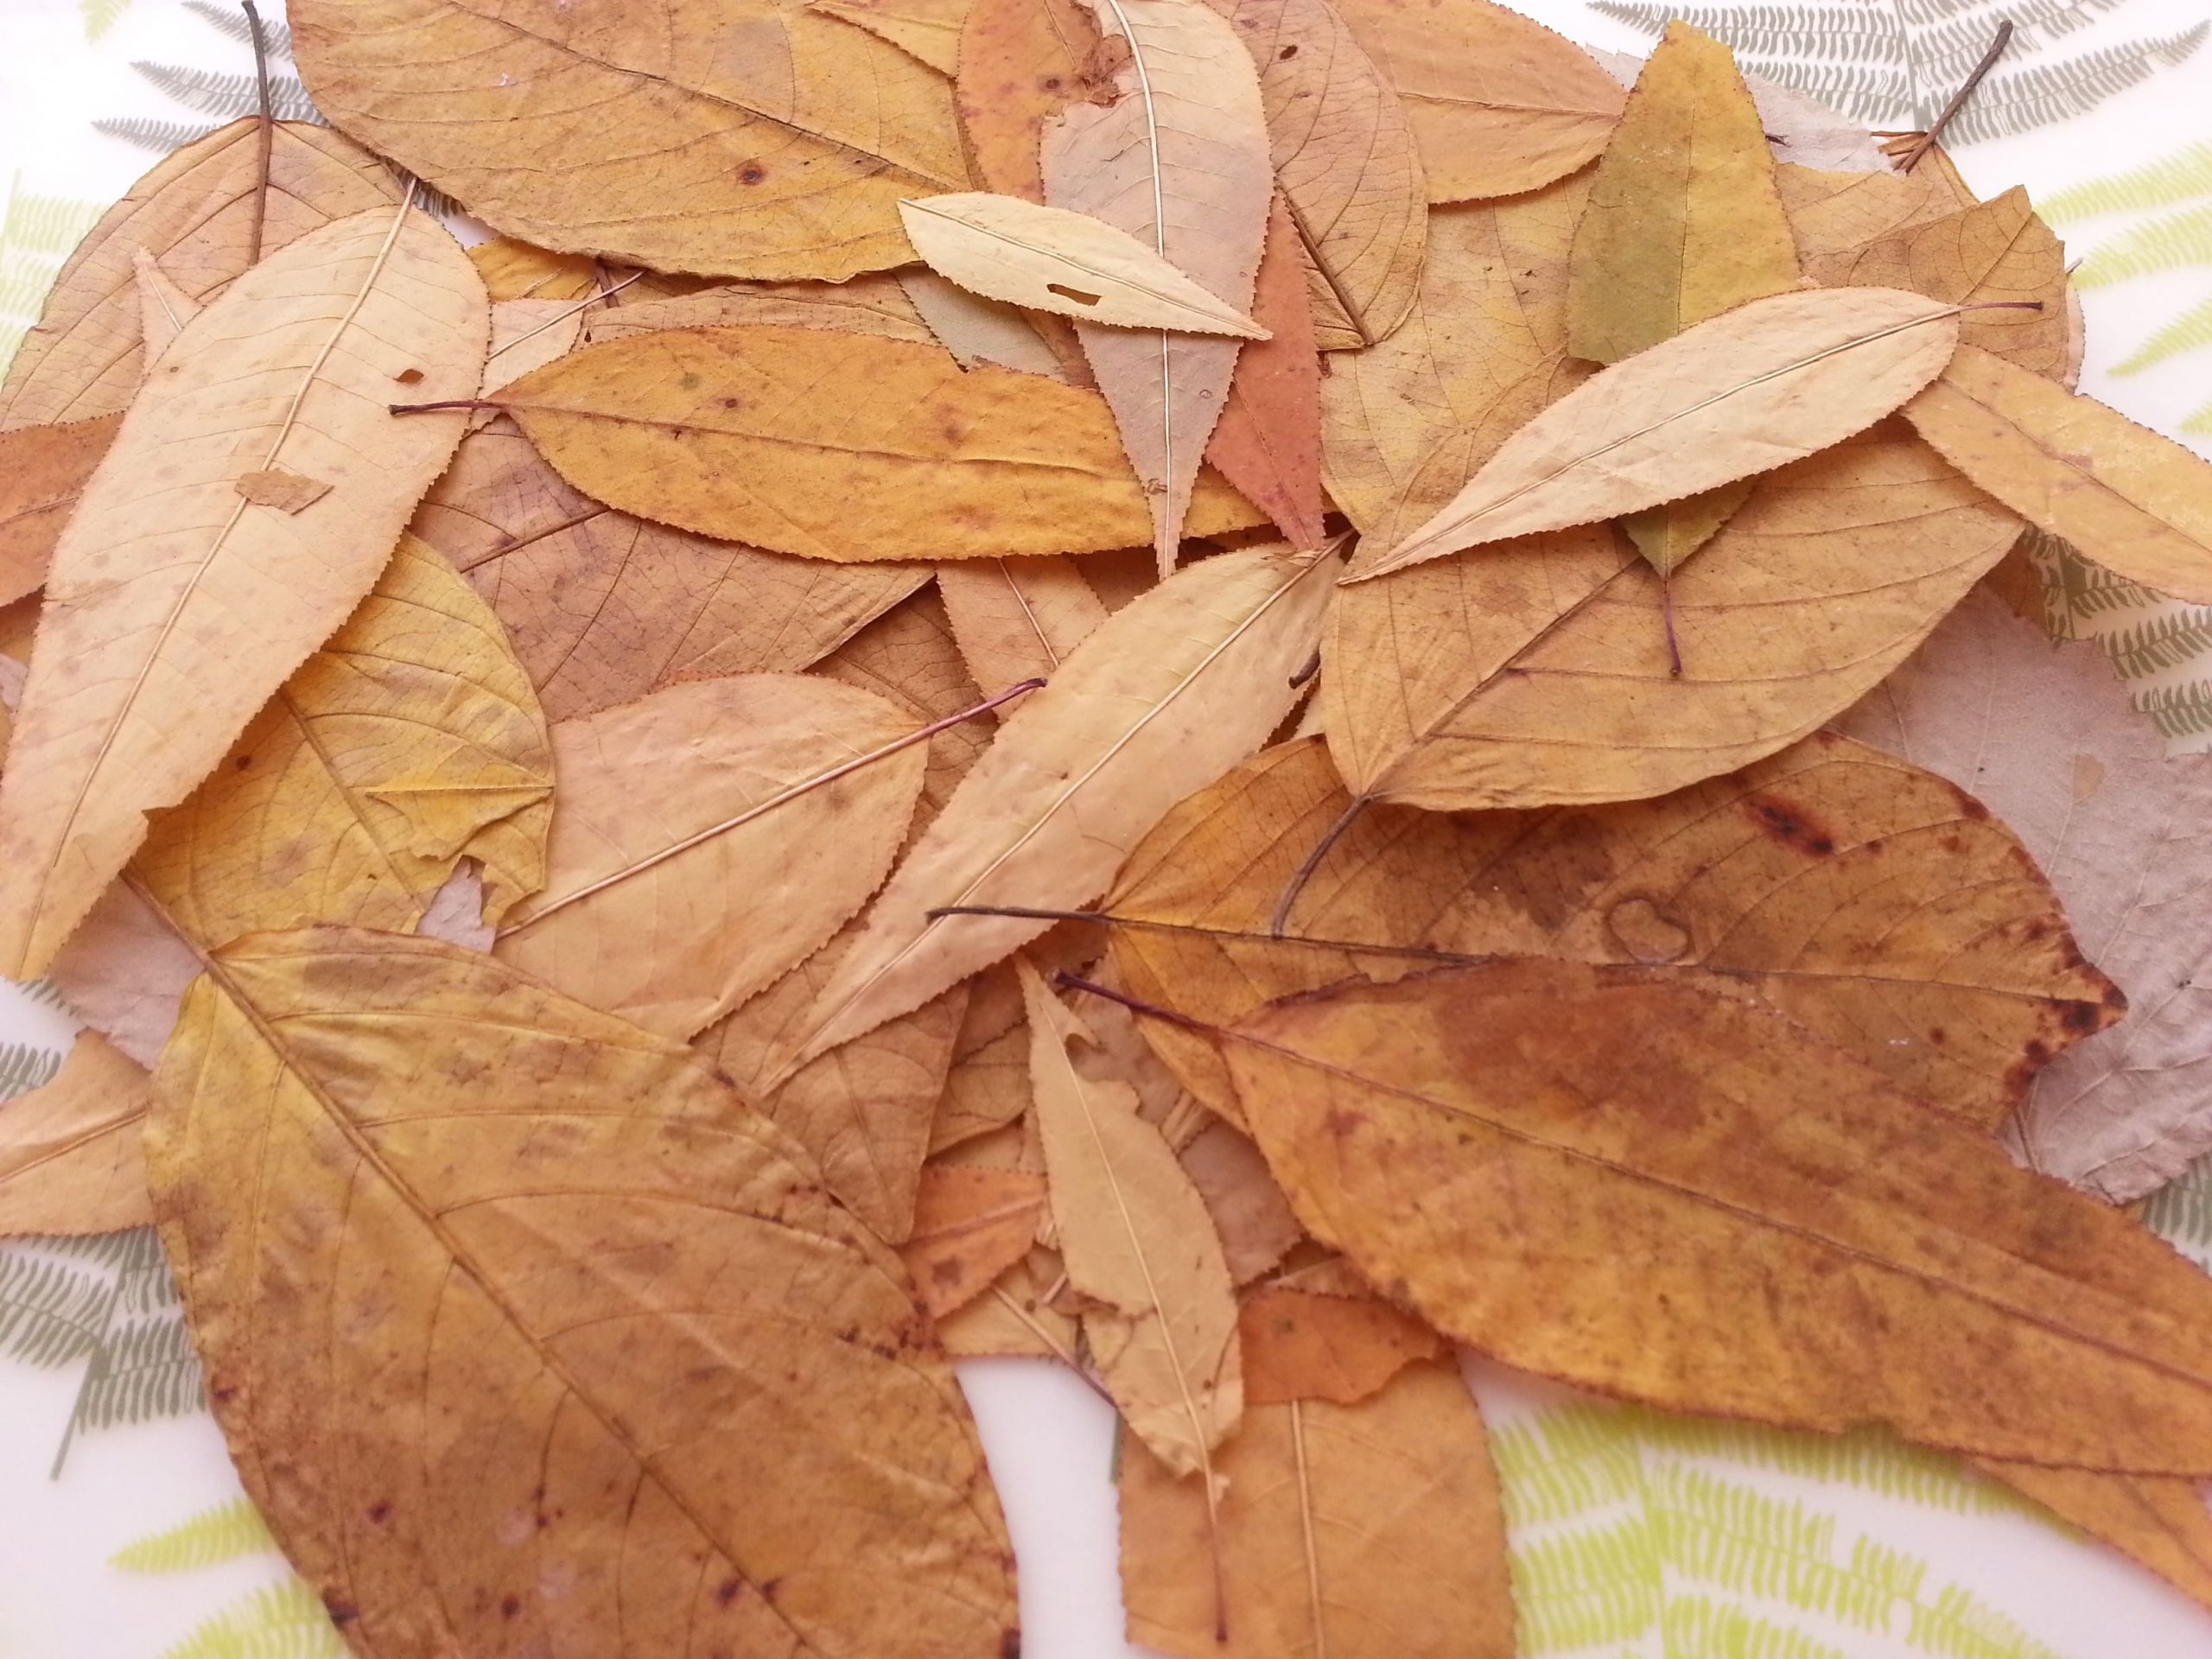 Засушенная опавшая листва, как элемент декора или часть какой-то композиции.